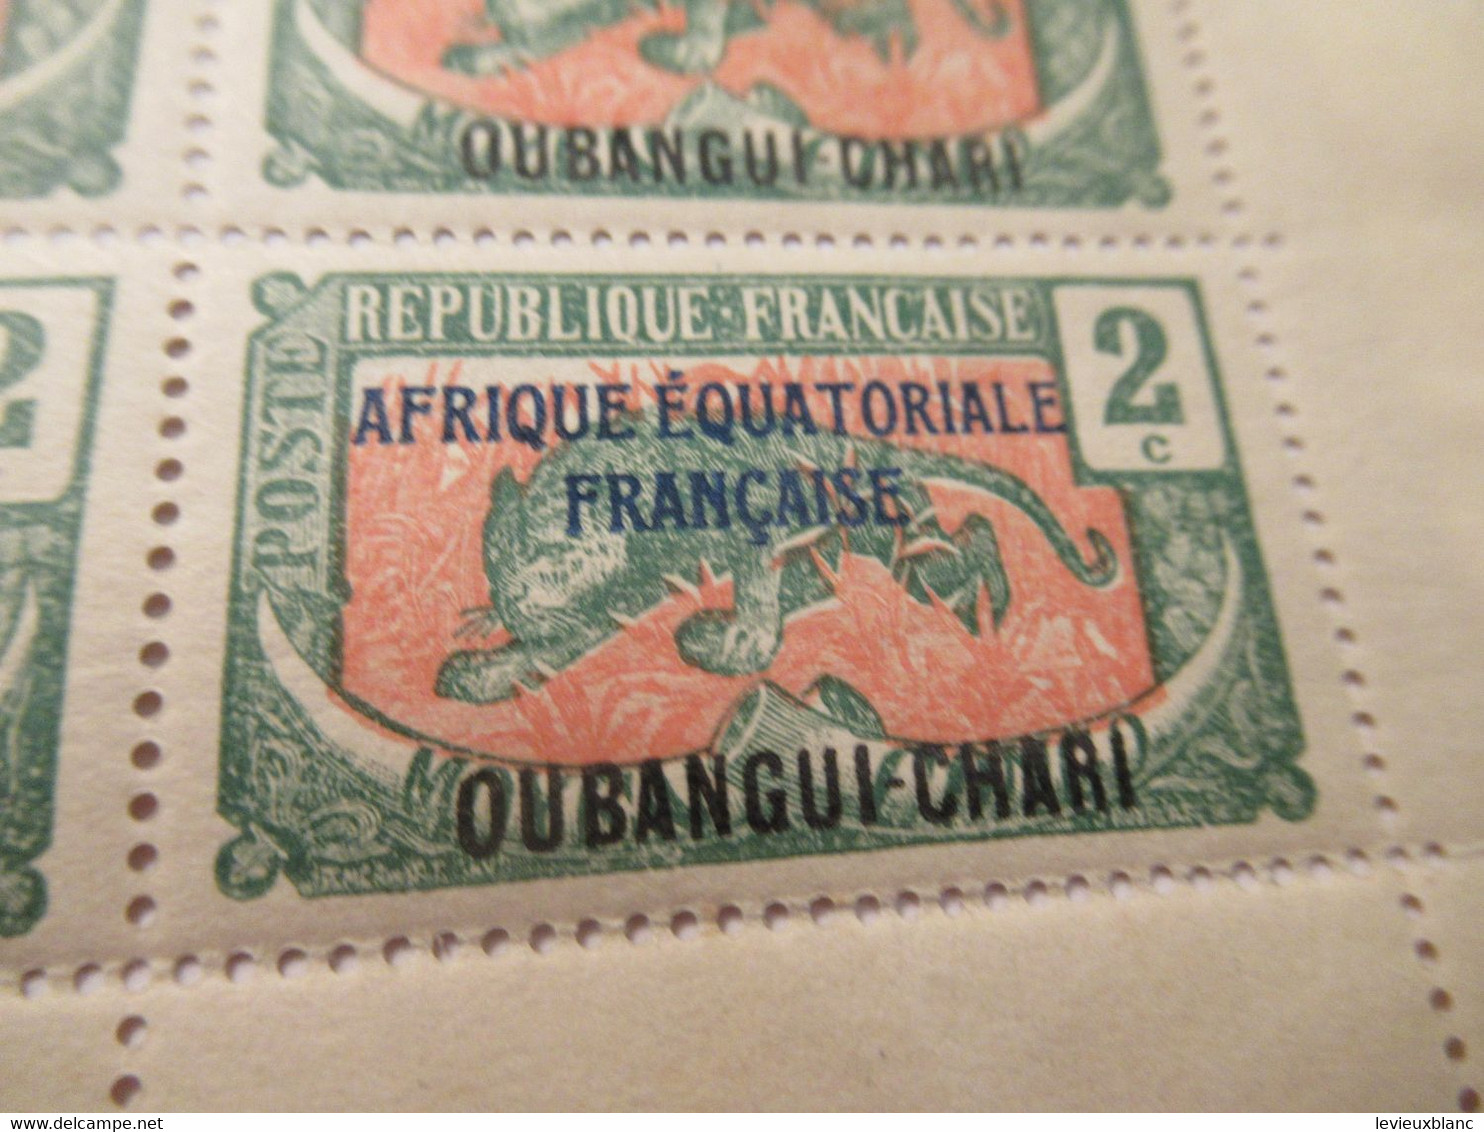 Plaque Complète De 25 Timbres 2C Anciens/Moyen Congo 1907 Surchargés AEF/Oubangui Chari1/Panthère/1924-25     TIMB155 - Sonstige - Afrika